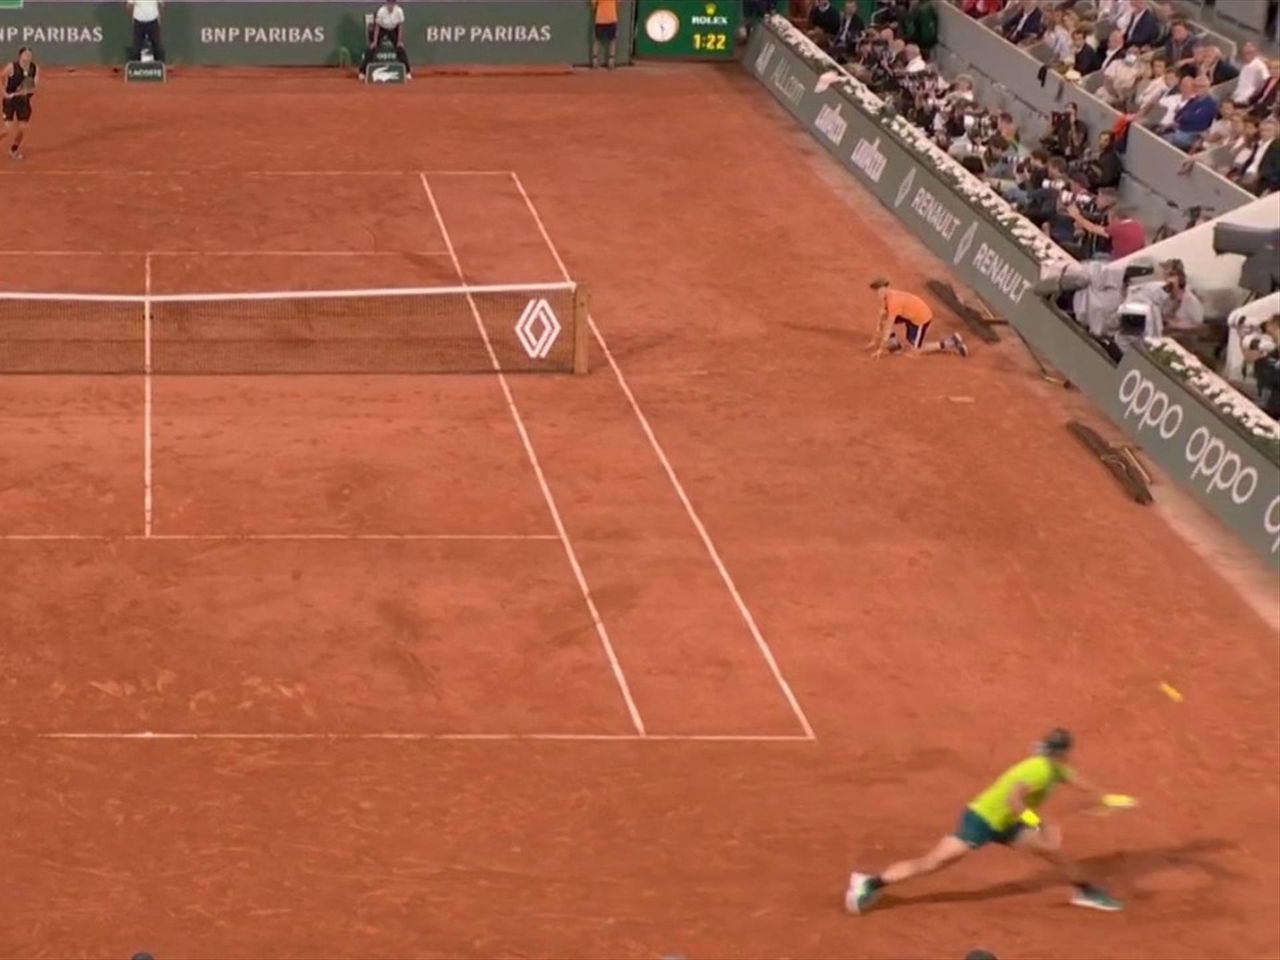 French Open 2022 Rafael Nadal wehrt vier Satzbälle am Stück gegen Zverev ab und holt sich den Tiebreak - Tennis Video